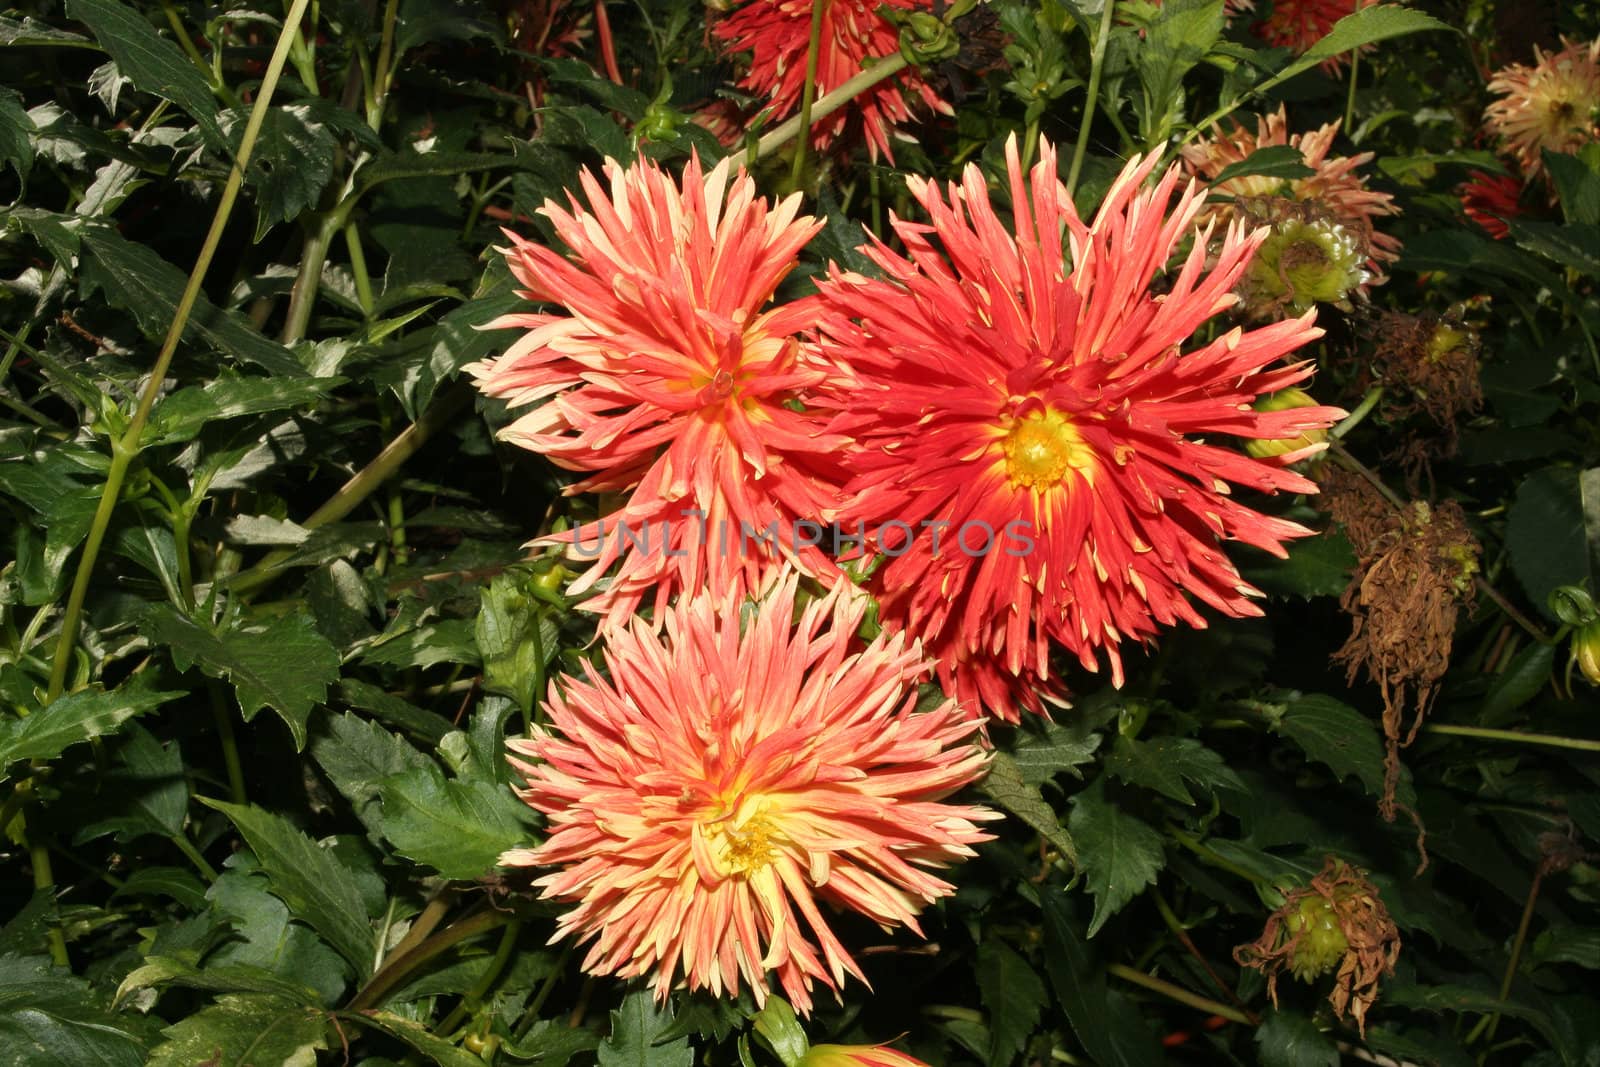 Dahlia flowers by tdietrich